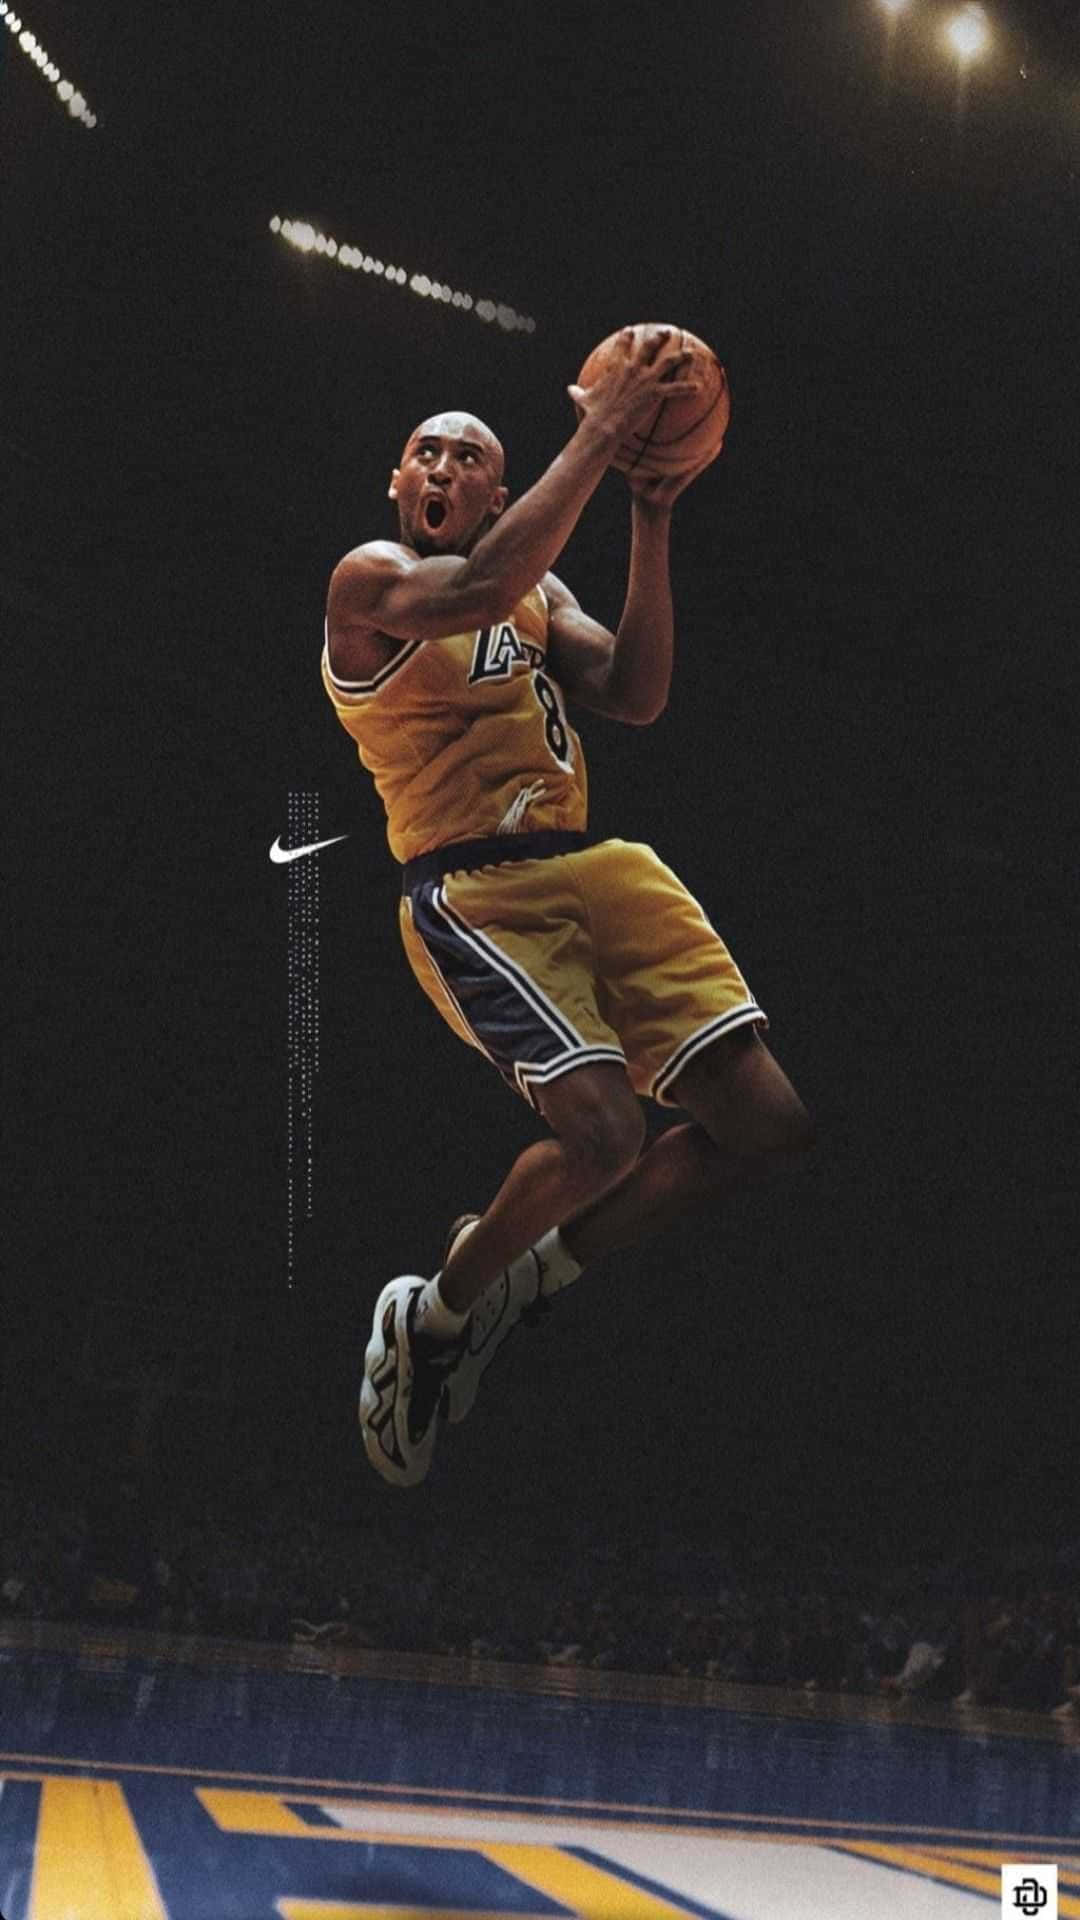 Immaginedel Leggendario Stella Dei Los Angeles Lakers, Kobe Bryant, Che Gioca A Basket. Sfondo